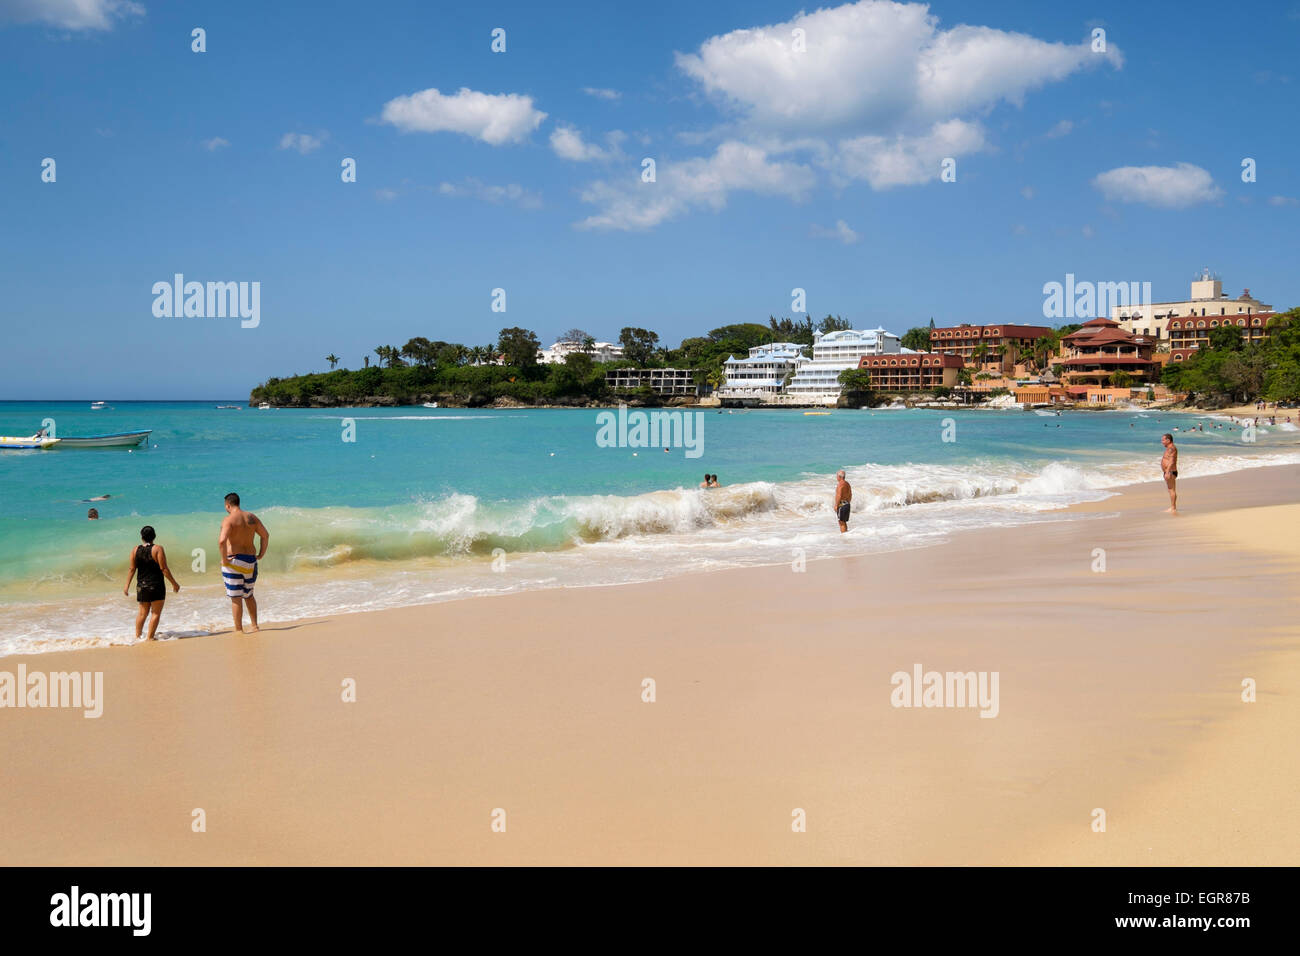 Les touristes sur une plage de sable fin sur l'océan Atlantique à l'holiday resort de Sosua, République dominicaine, îles des Caraïbes Banque D'Images